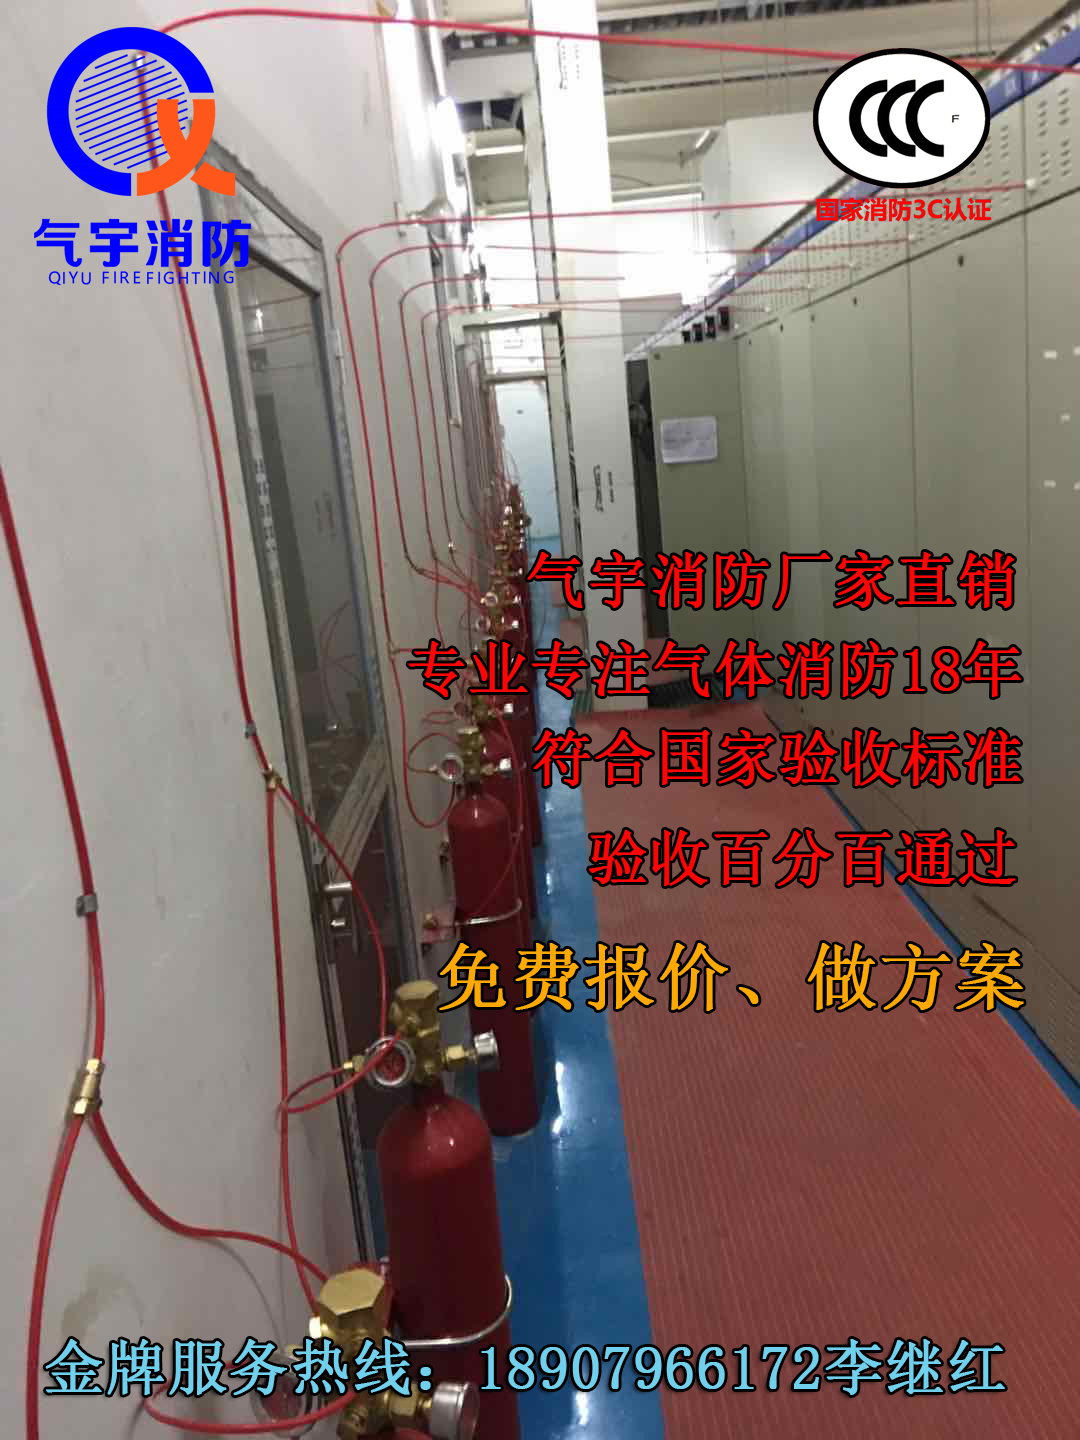 全国批发 新能源充电桩火探管自动感温灭火器 广州气宇生产厂家优惠价